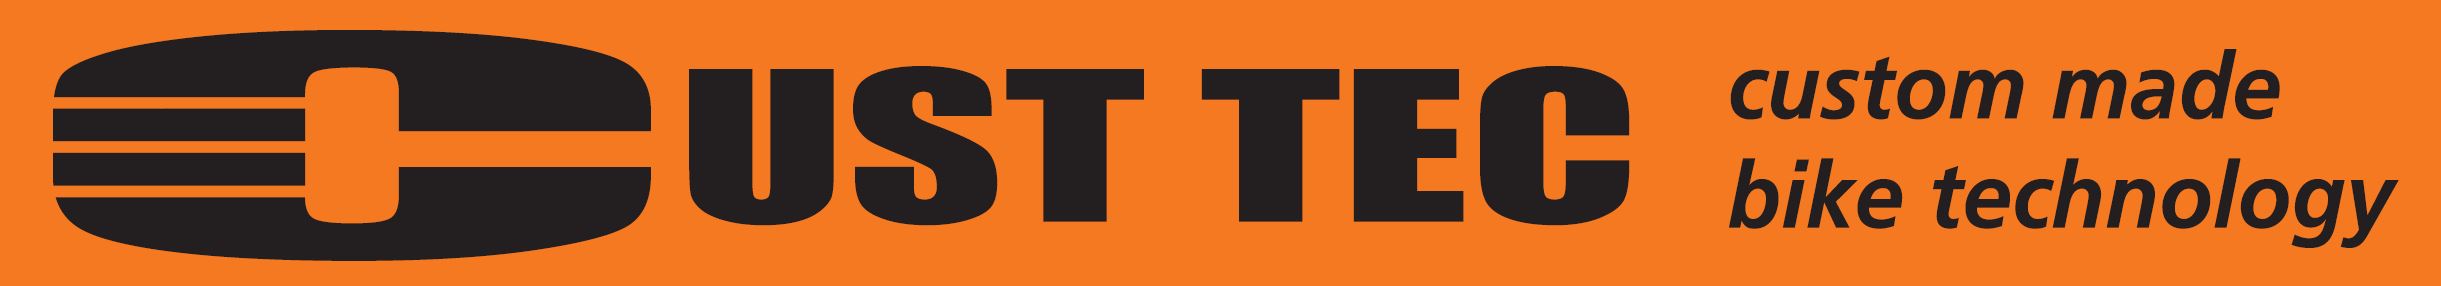 Custtec logo 03